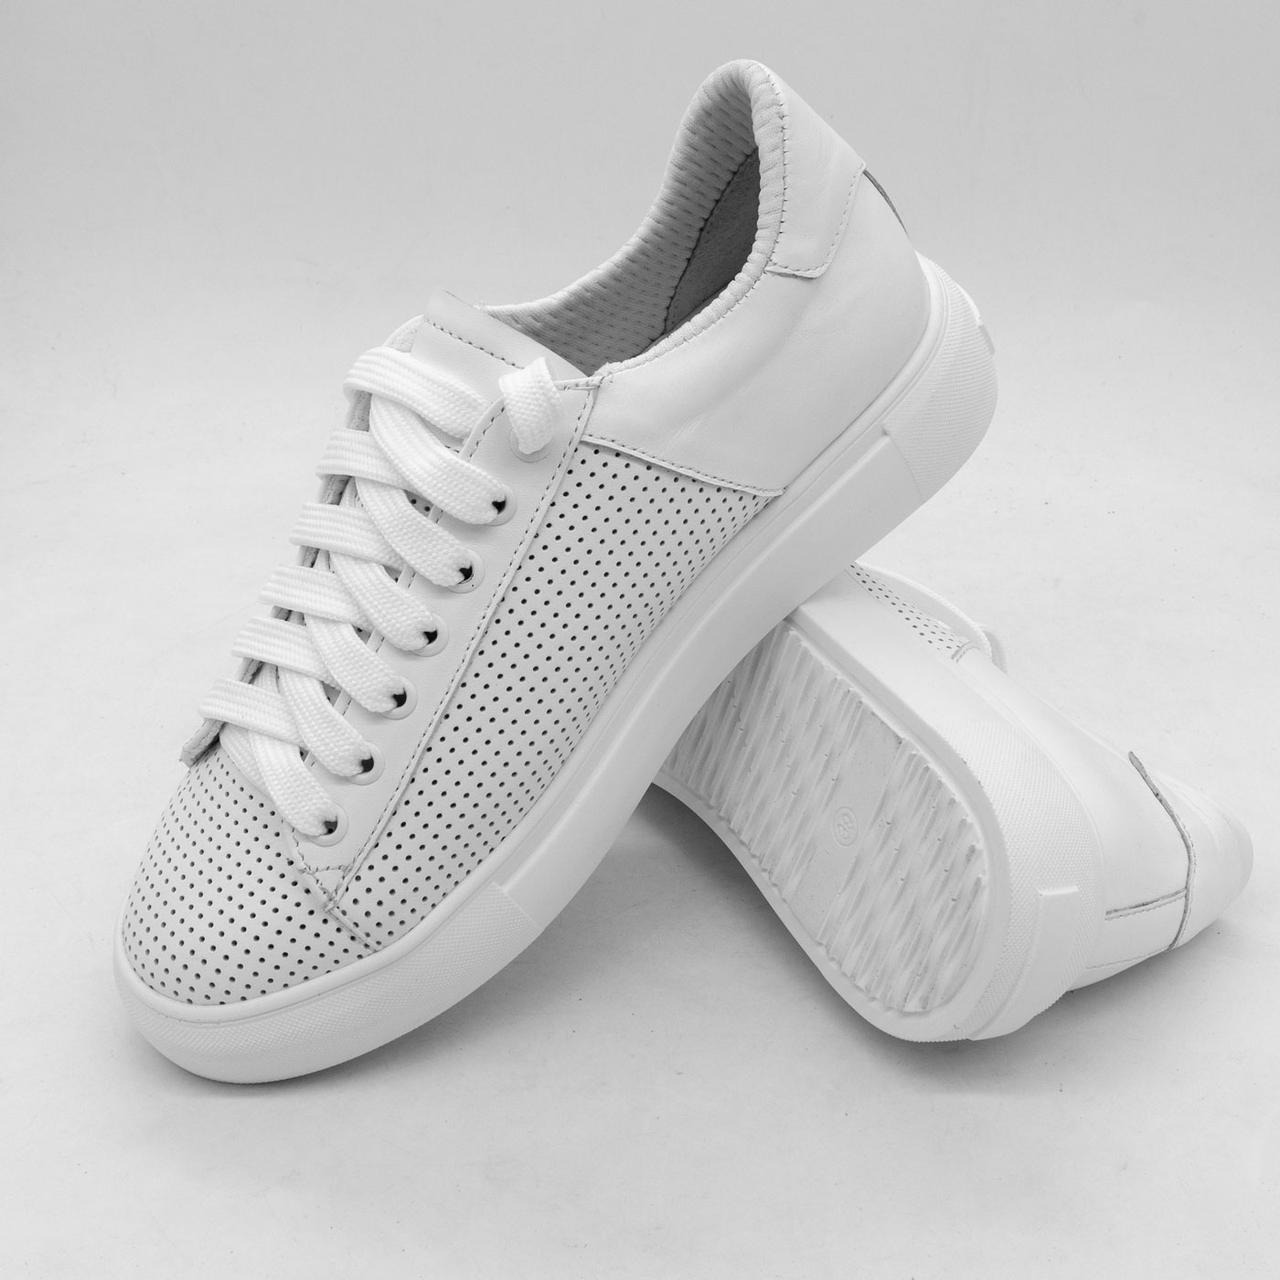 Жіночі білі шкіряні кросівки psw-24v 39. Розміри в наявності: 39, 40, 41.